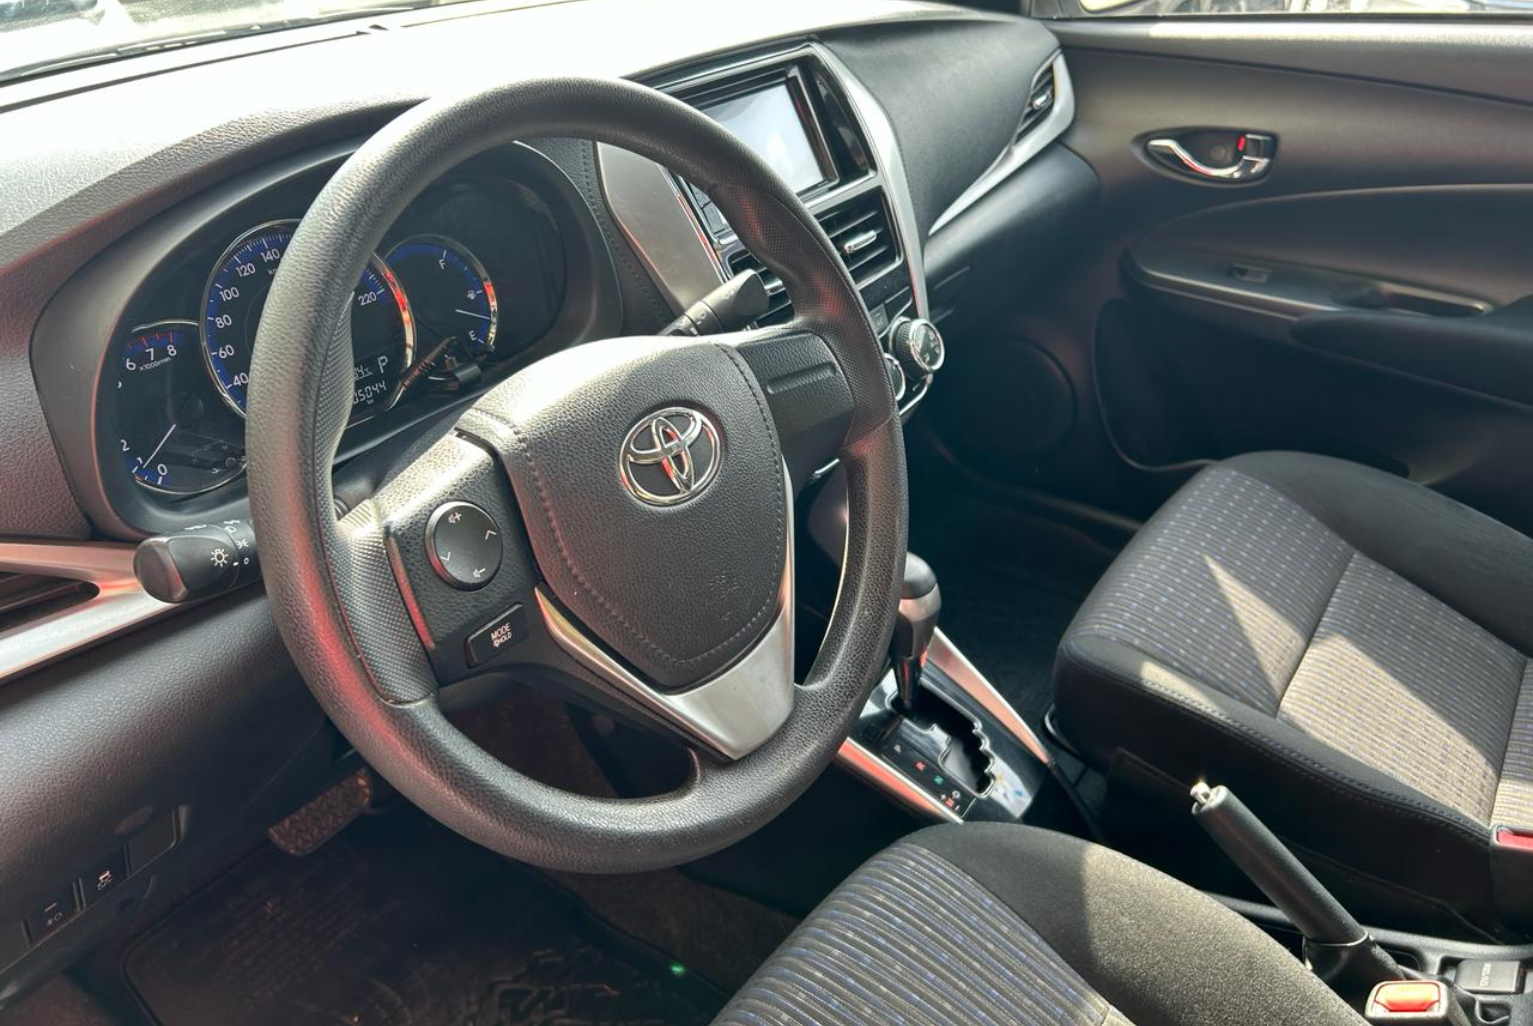 Toyota Yaris 2018 Automático color Plateado, Imagen #7